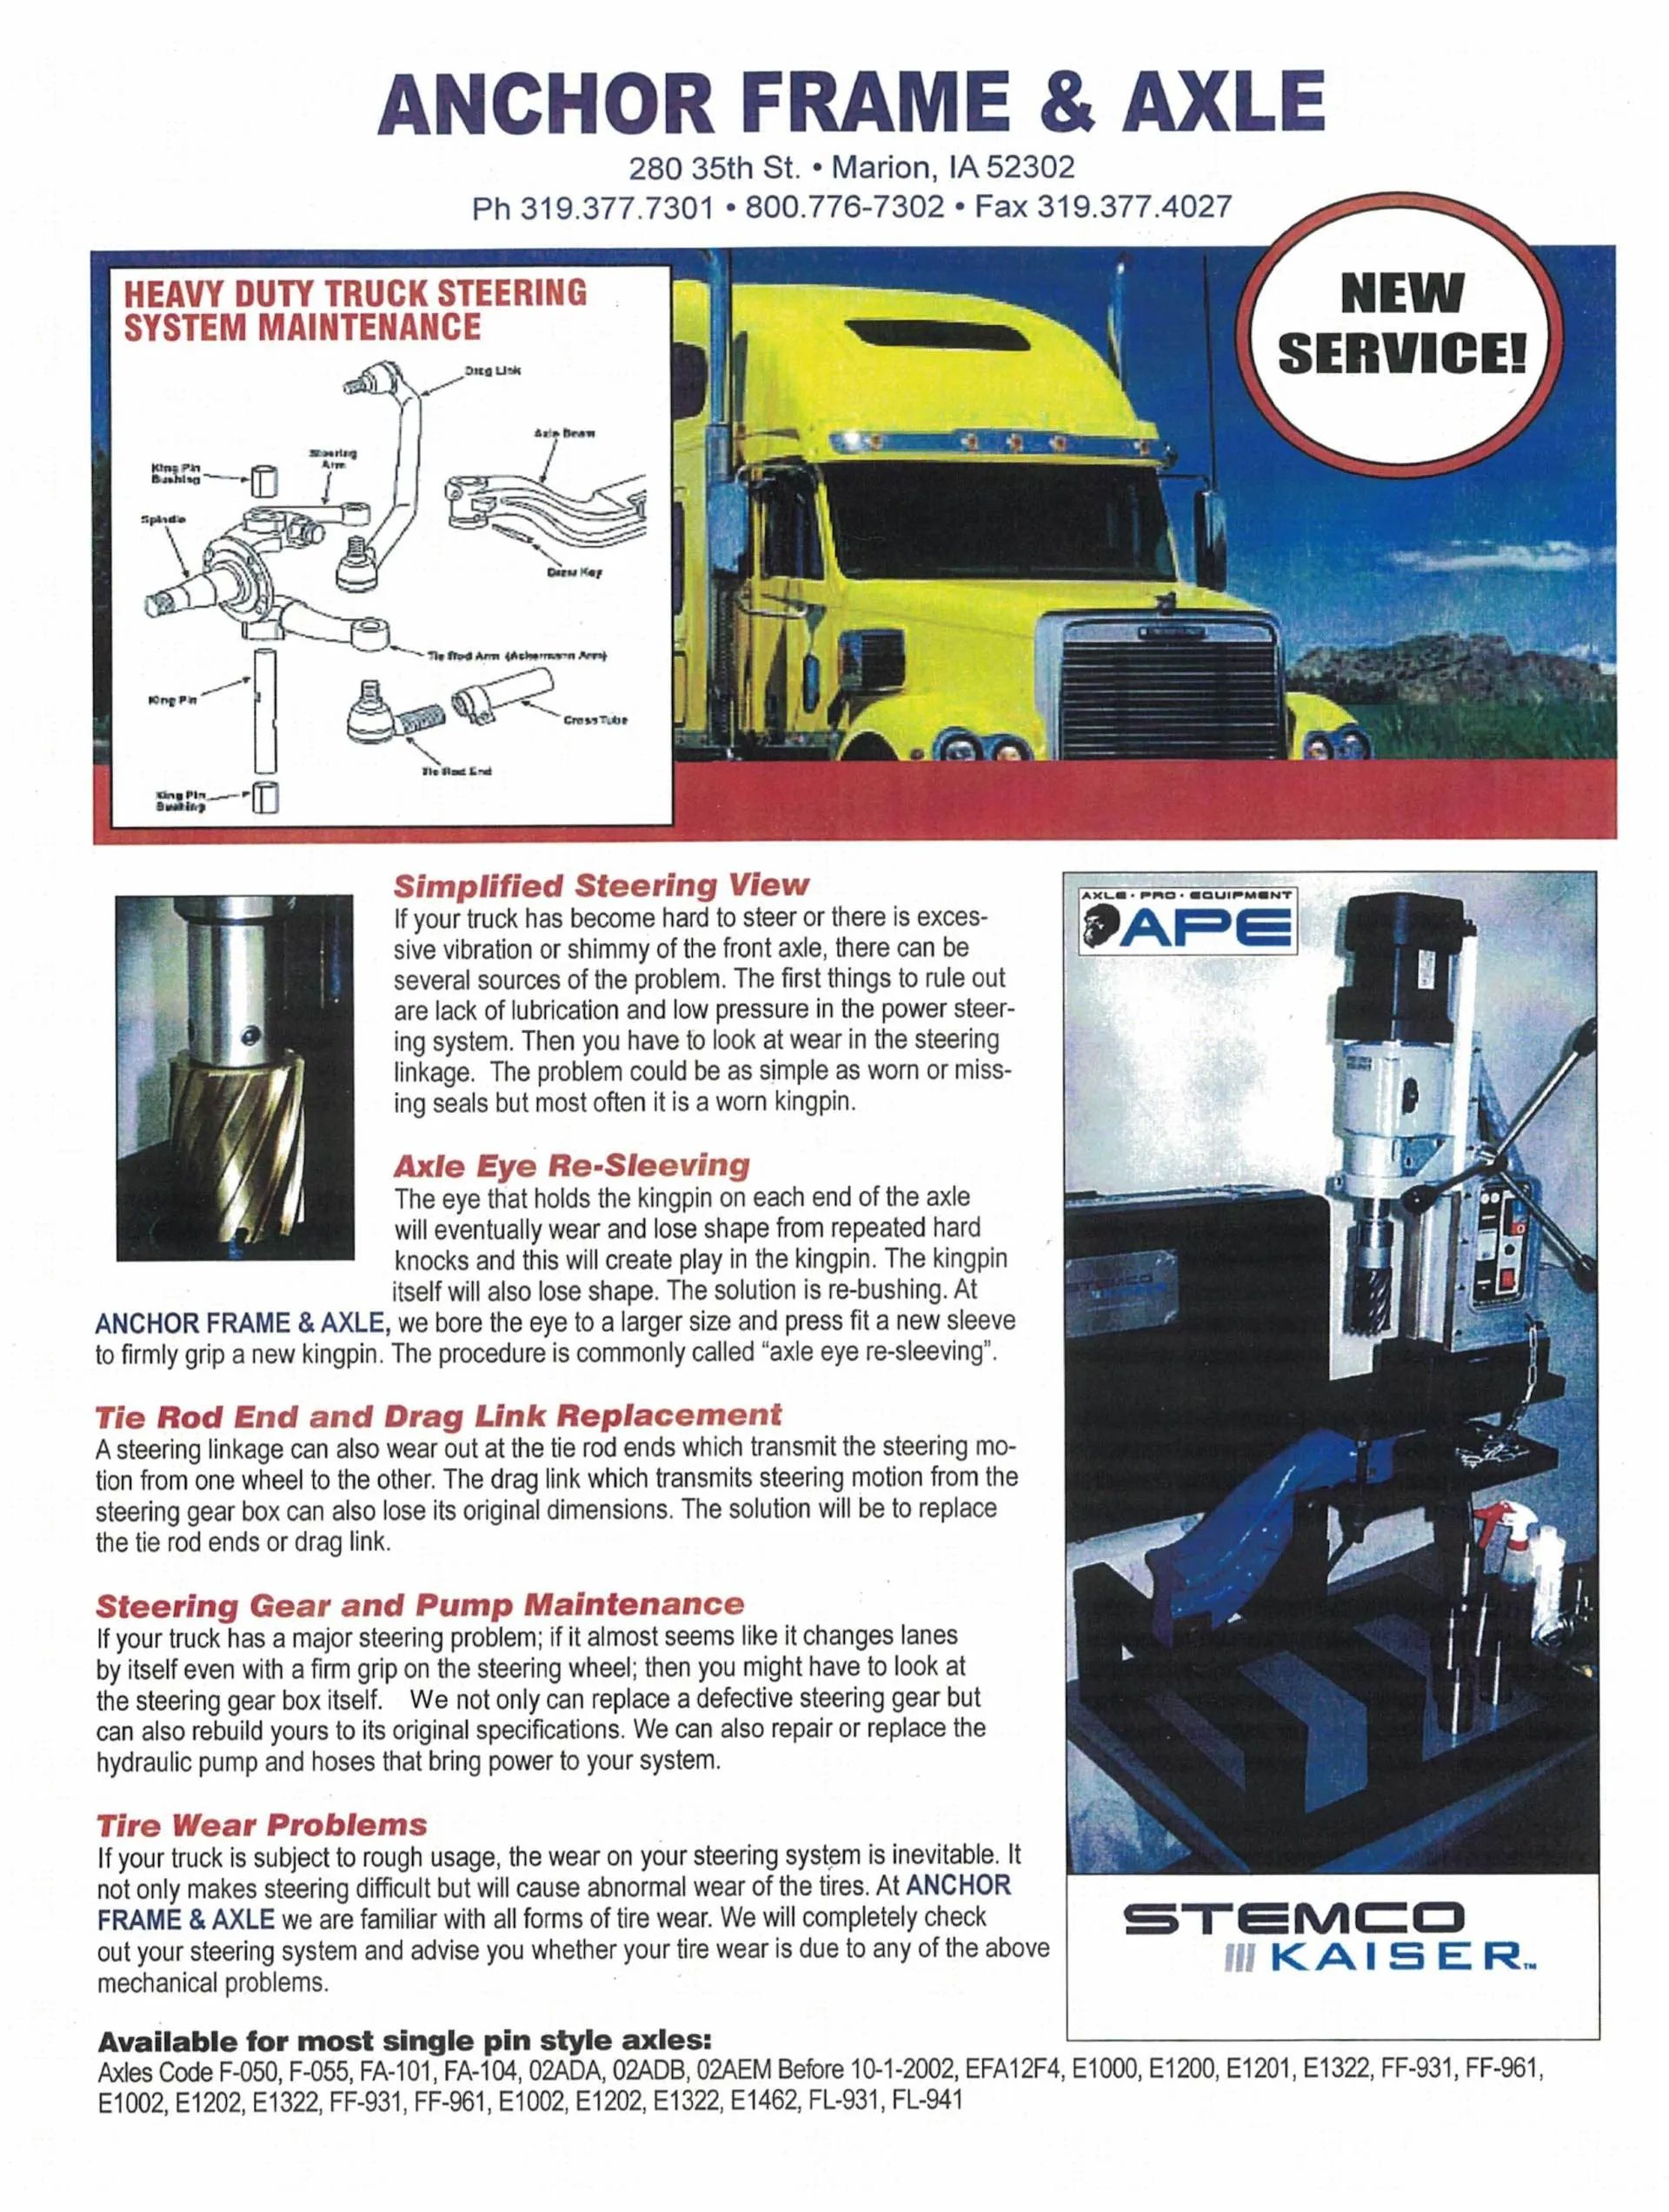 Truck information